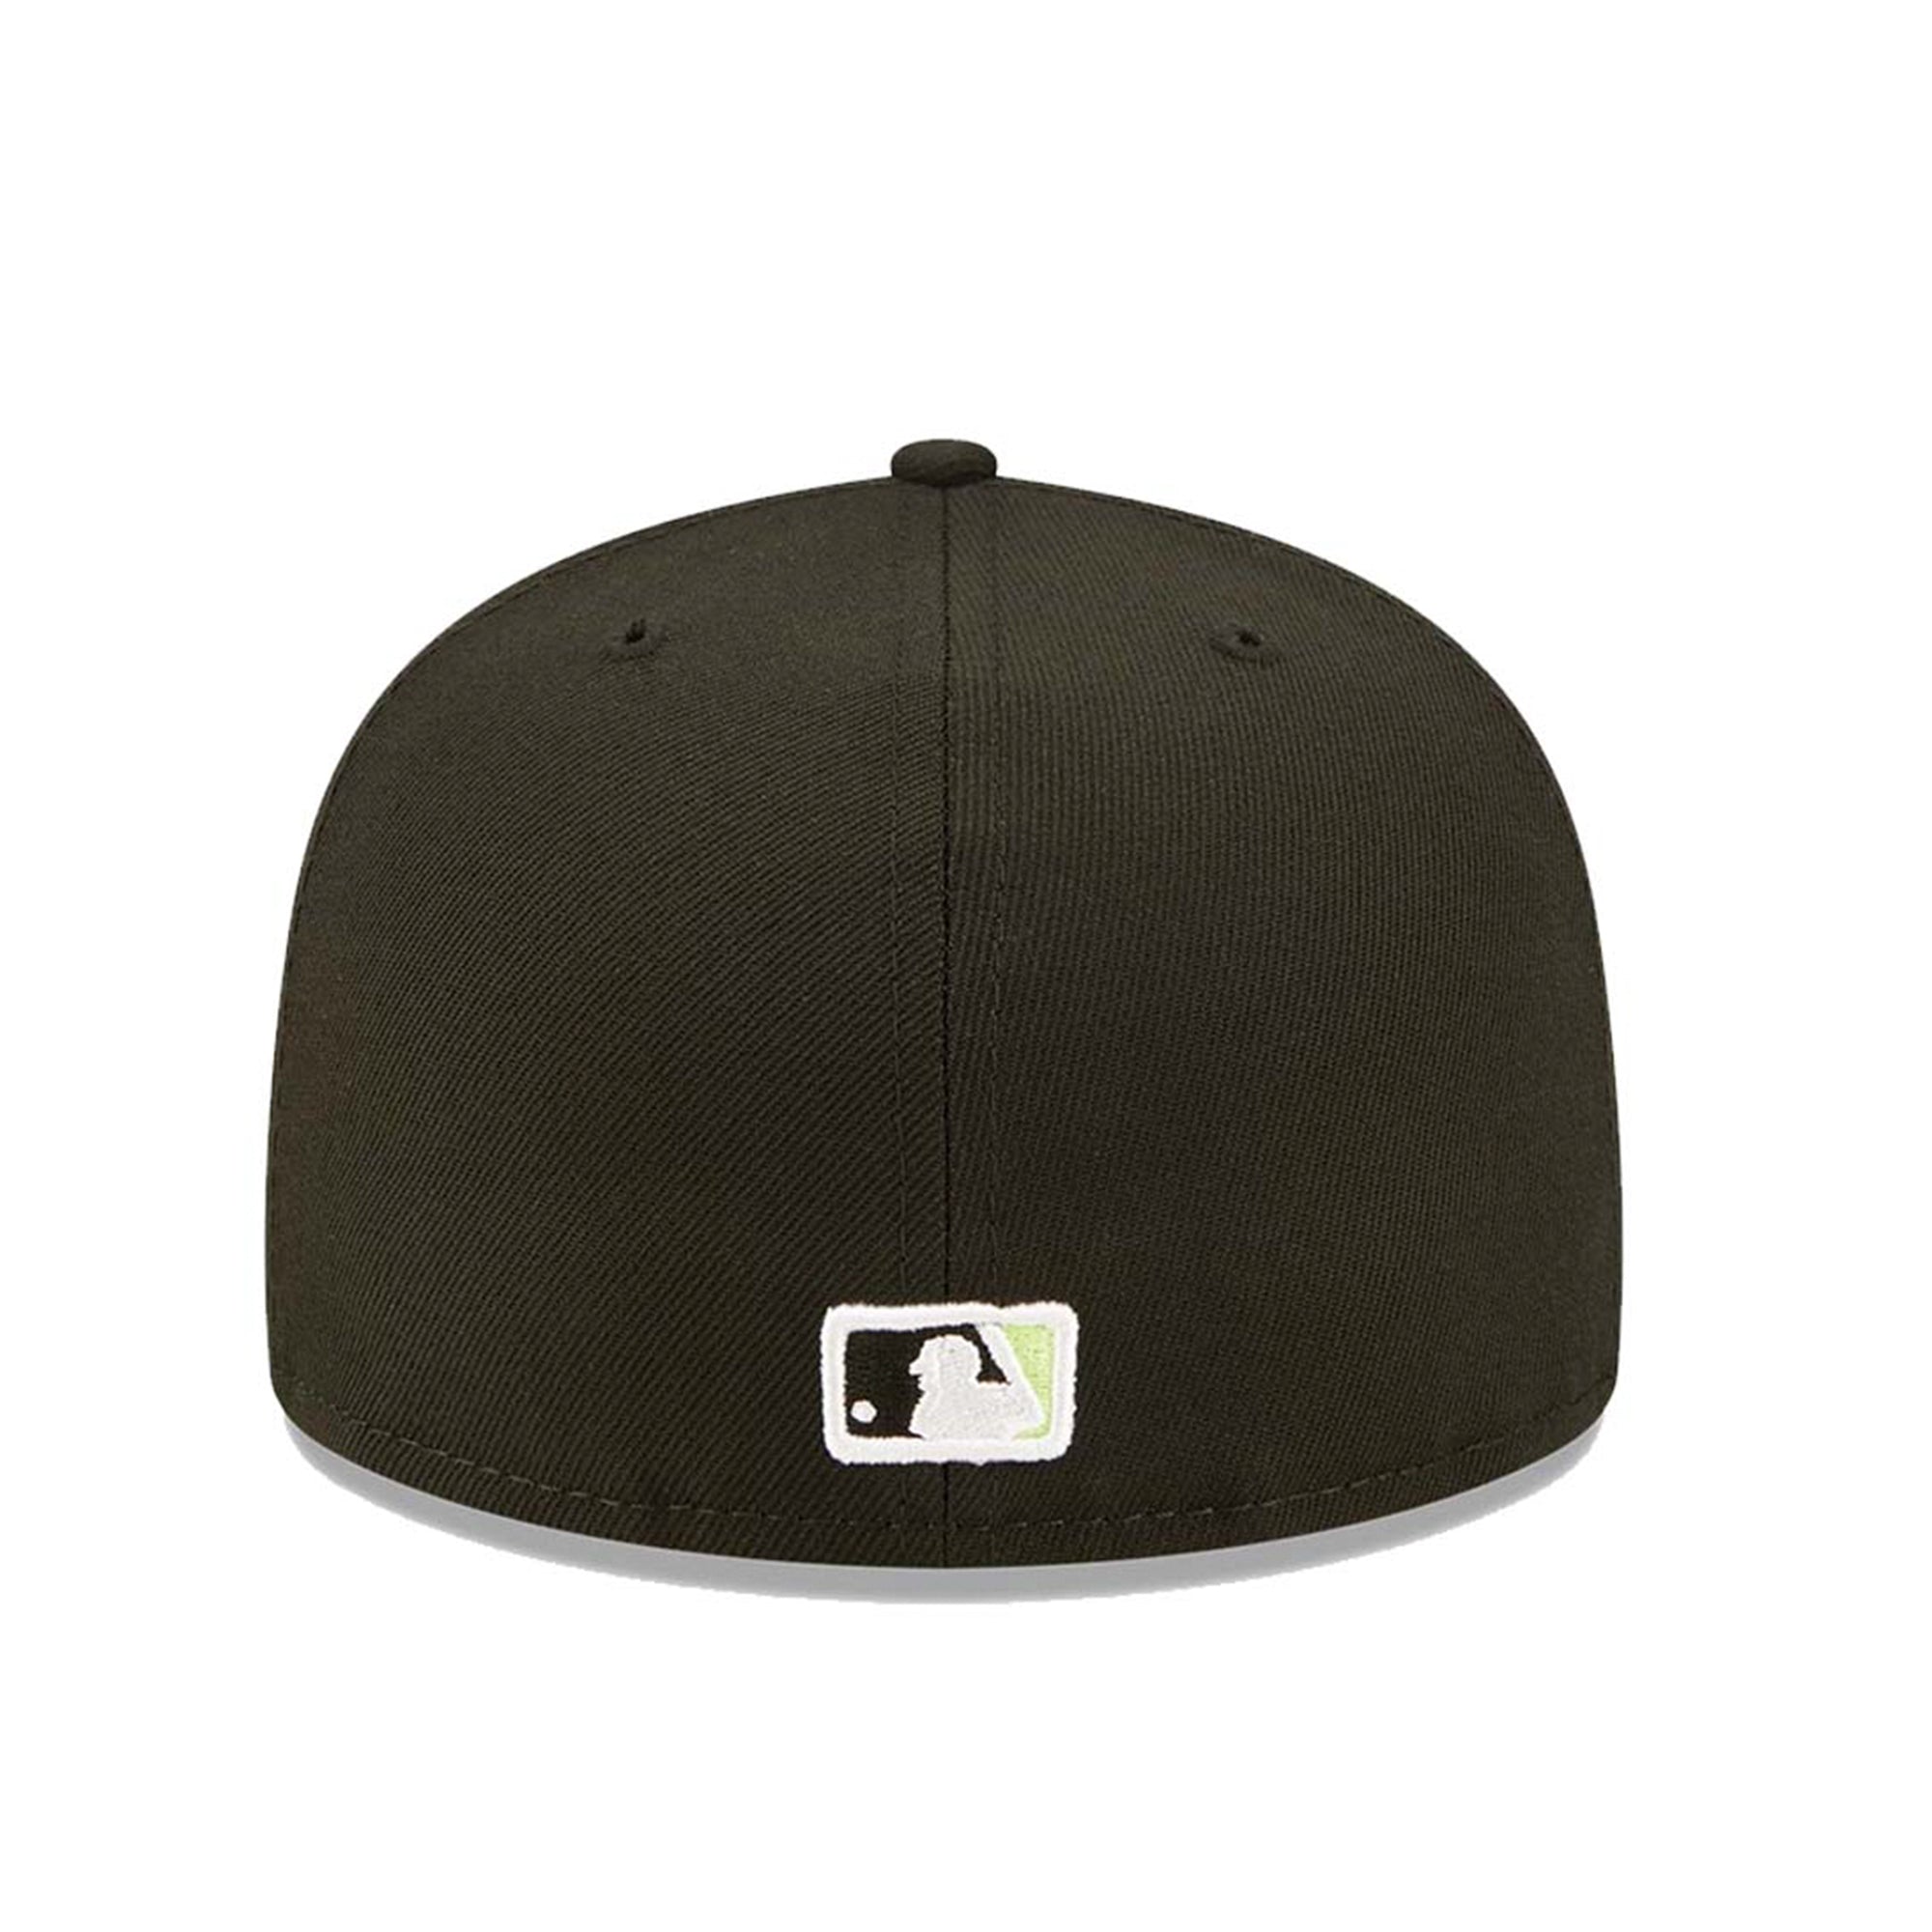 New Era New York Yankees Fitted Hat (Black Neon)-Nexus Clothing